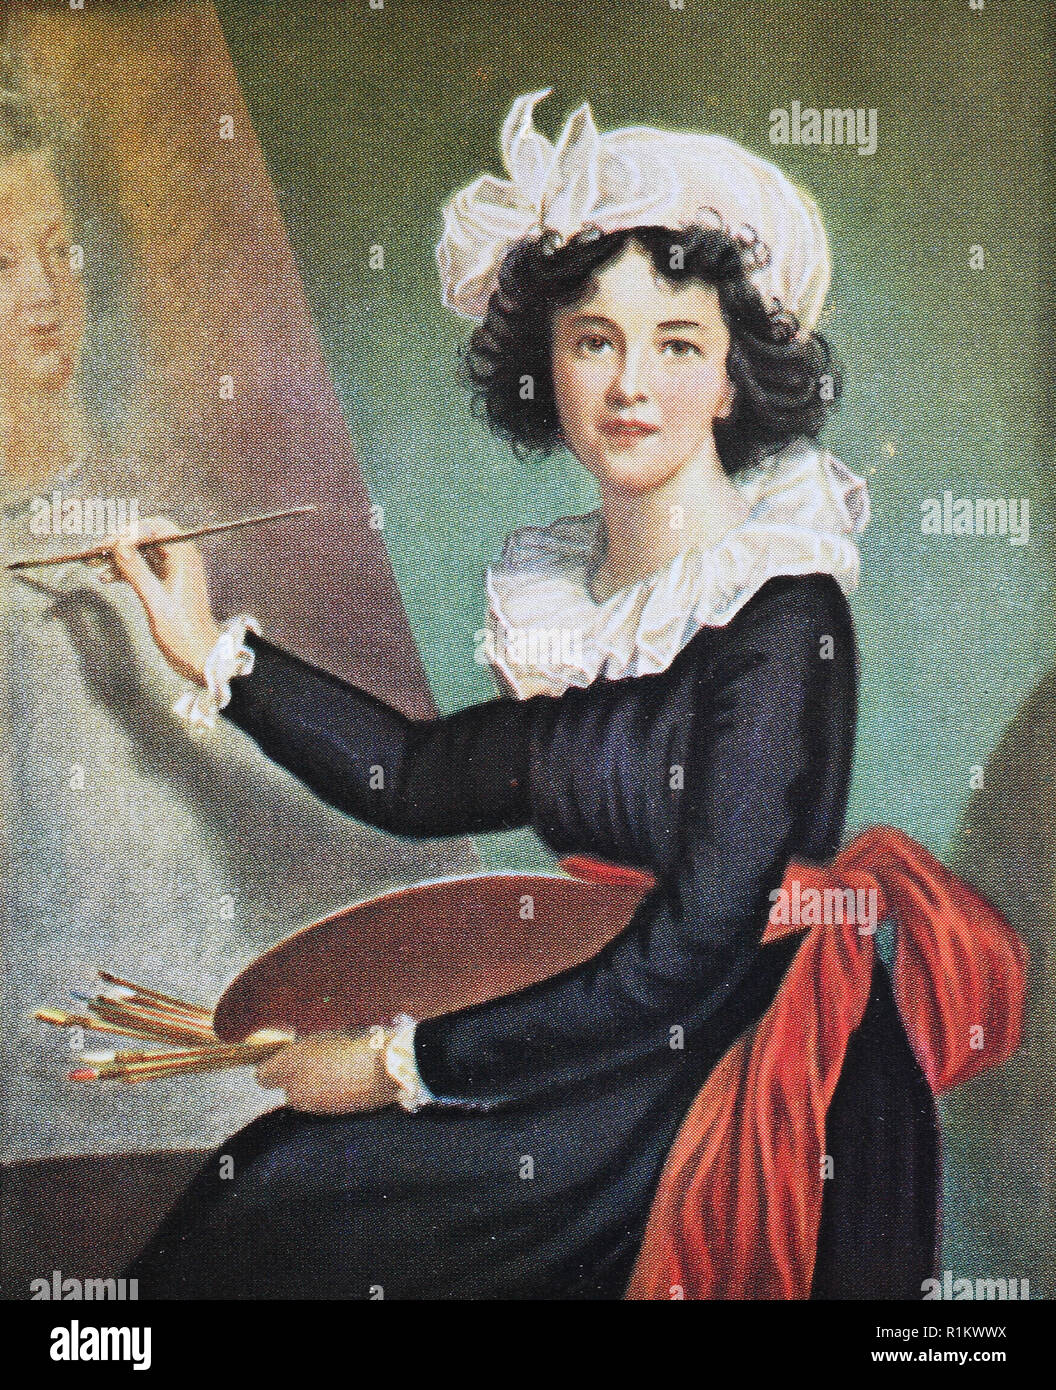 Digital riproduzione migliorata, Elisabeth Louise Vigee Le Brun, 1755-1842, conosciuto anche come Madame Lebrun o Madame Le Brun, era un prominente ritratto francese pittore del tardo XVIII secolo Foto Stock